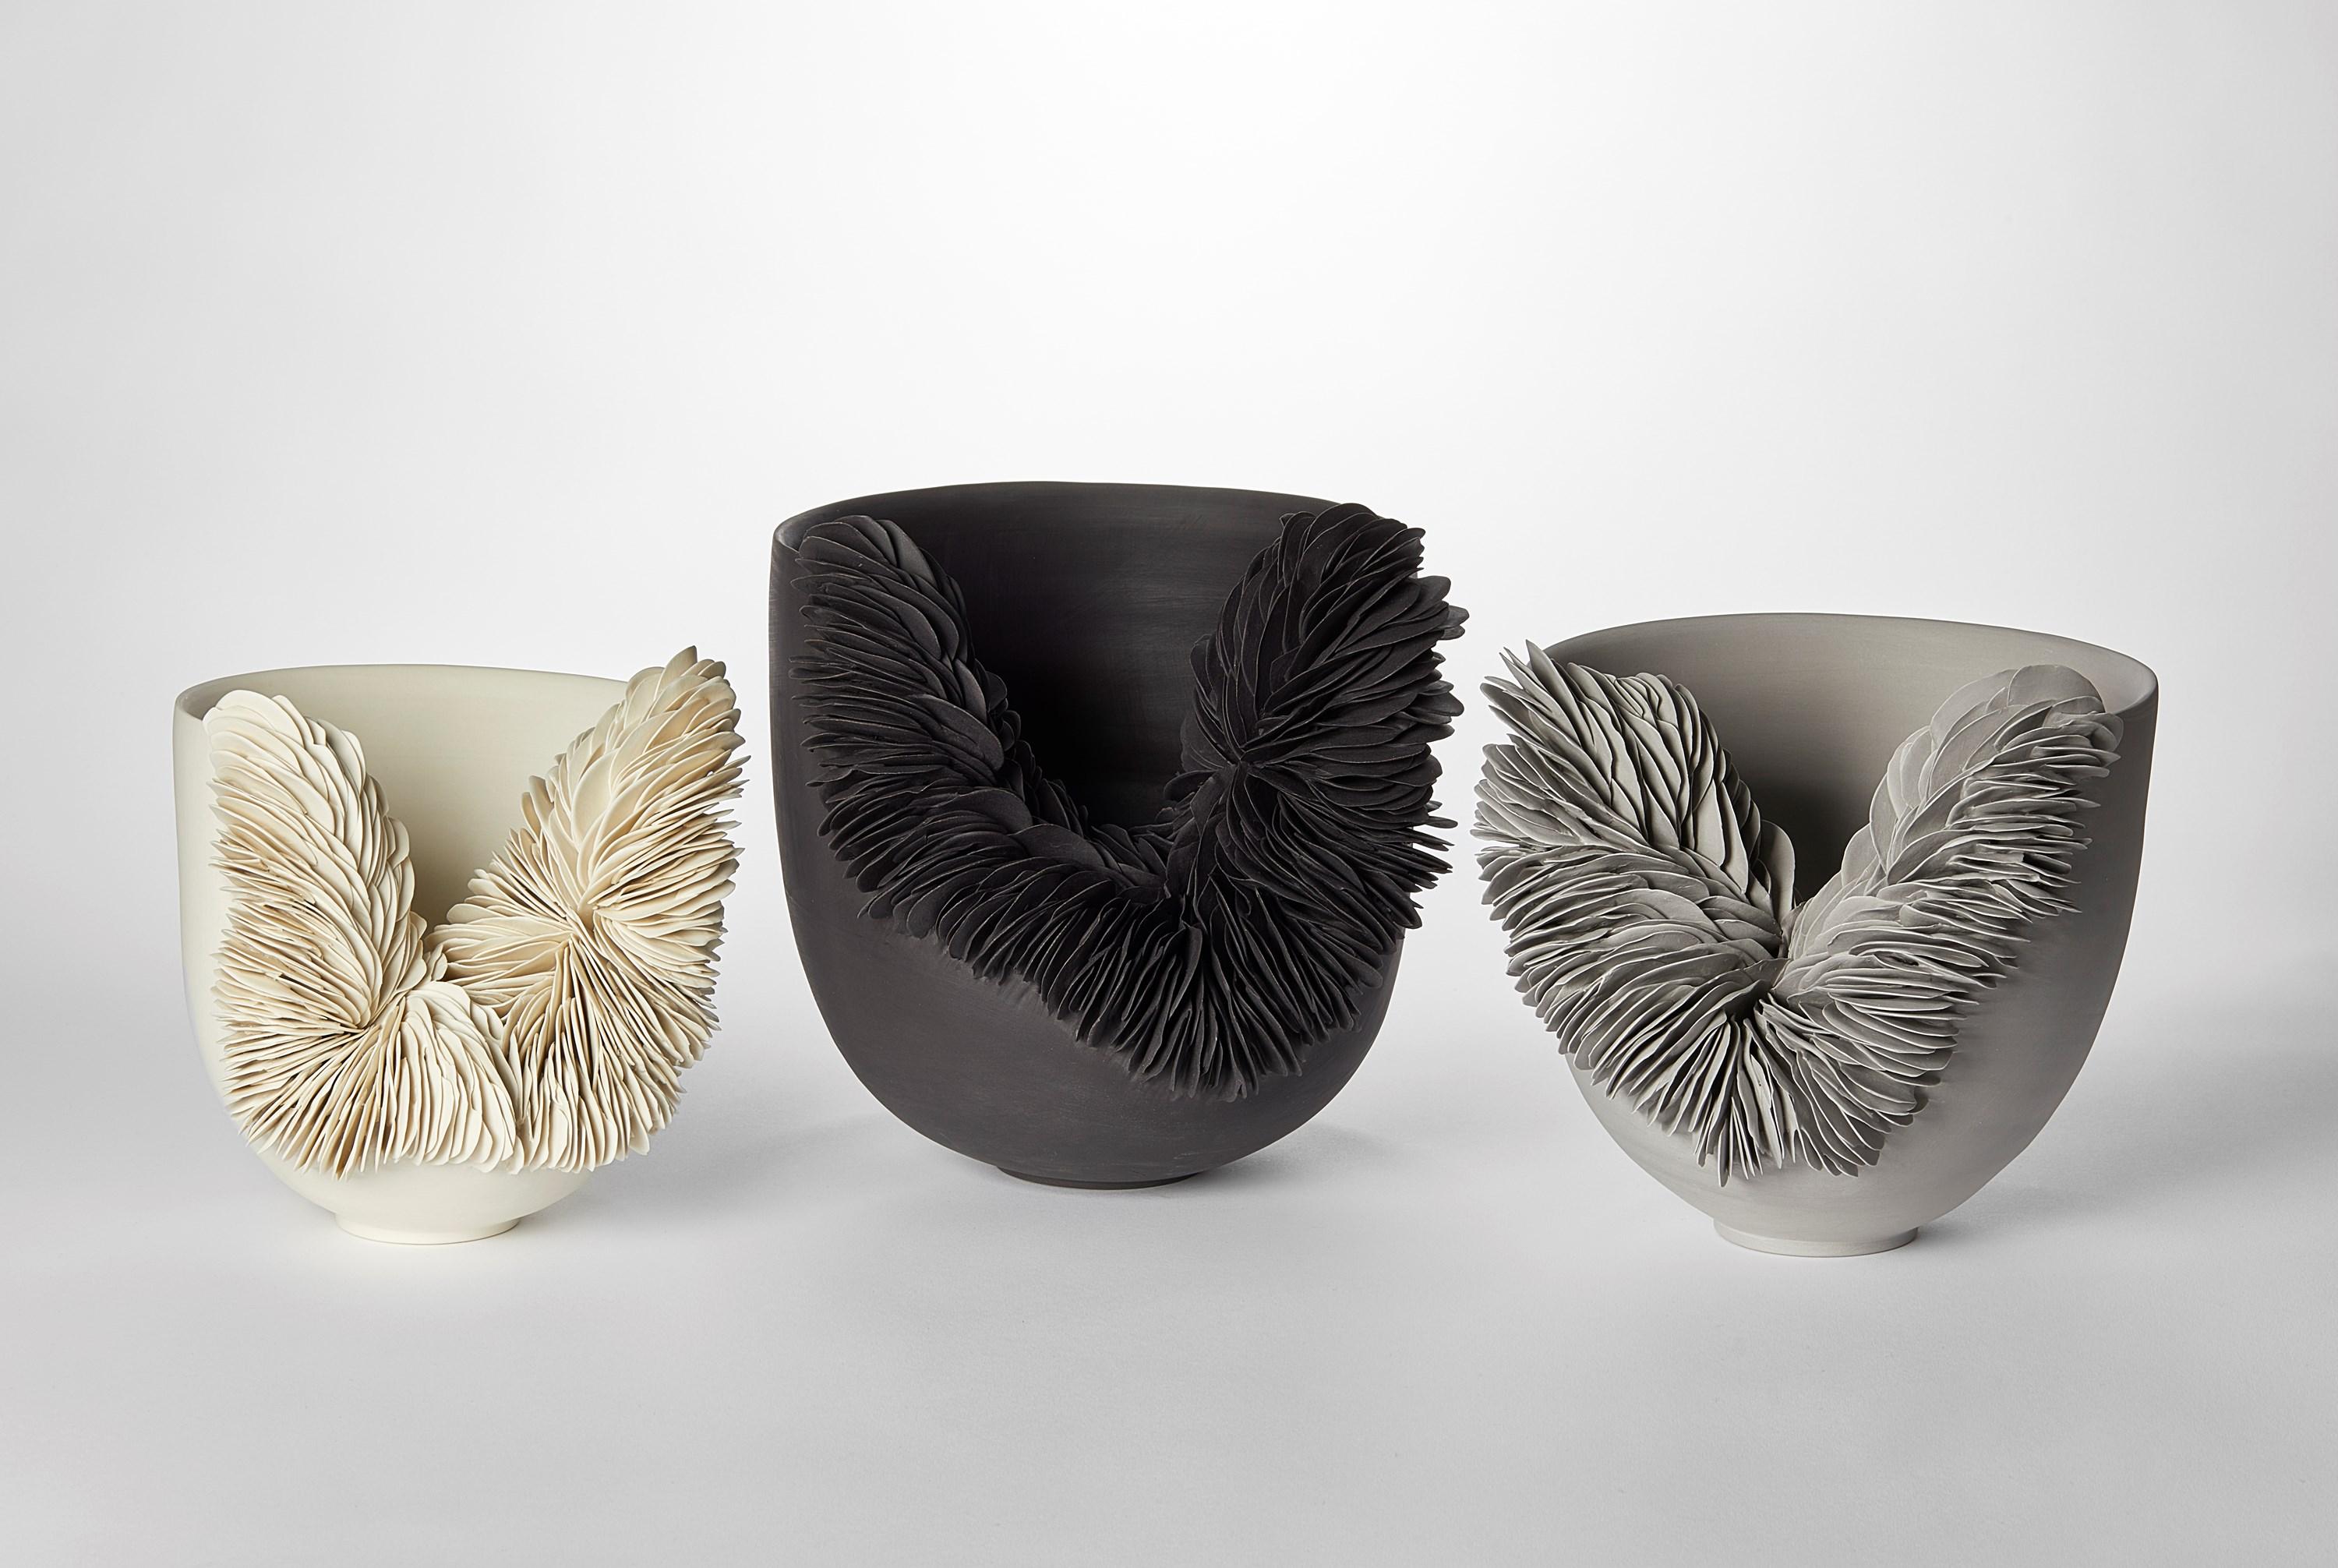 British Black Collapsed Bowl, textured porcelain sculptural vessel by Olivia Walker For Sale